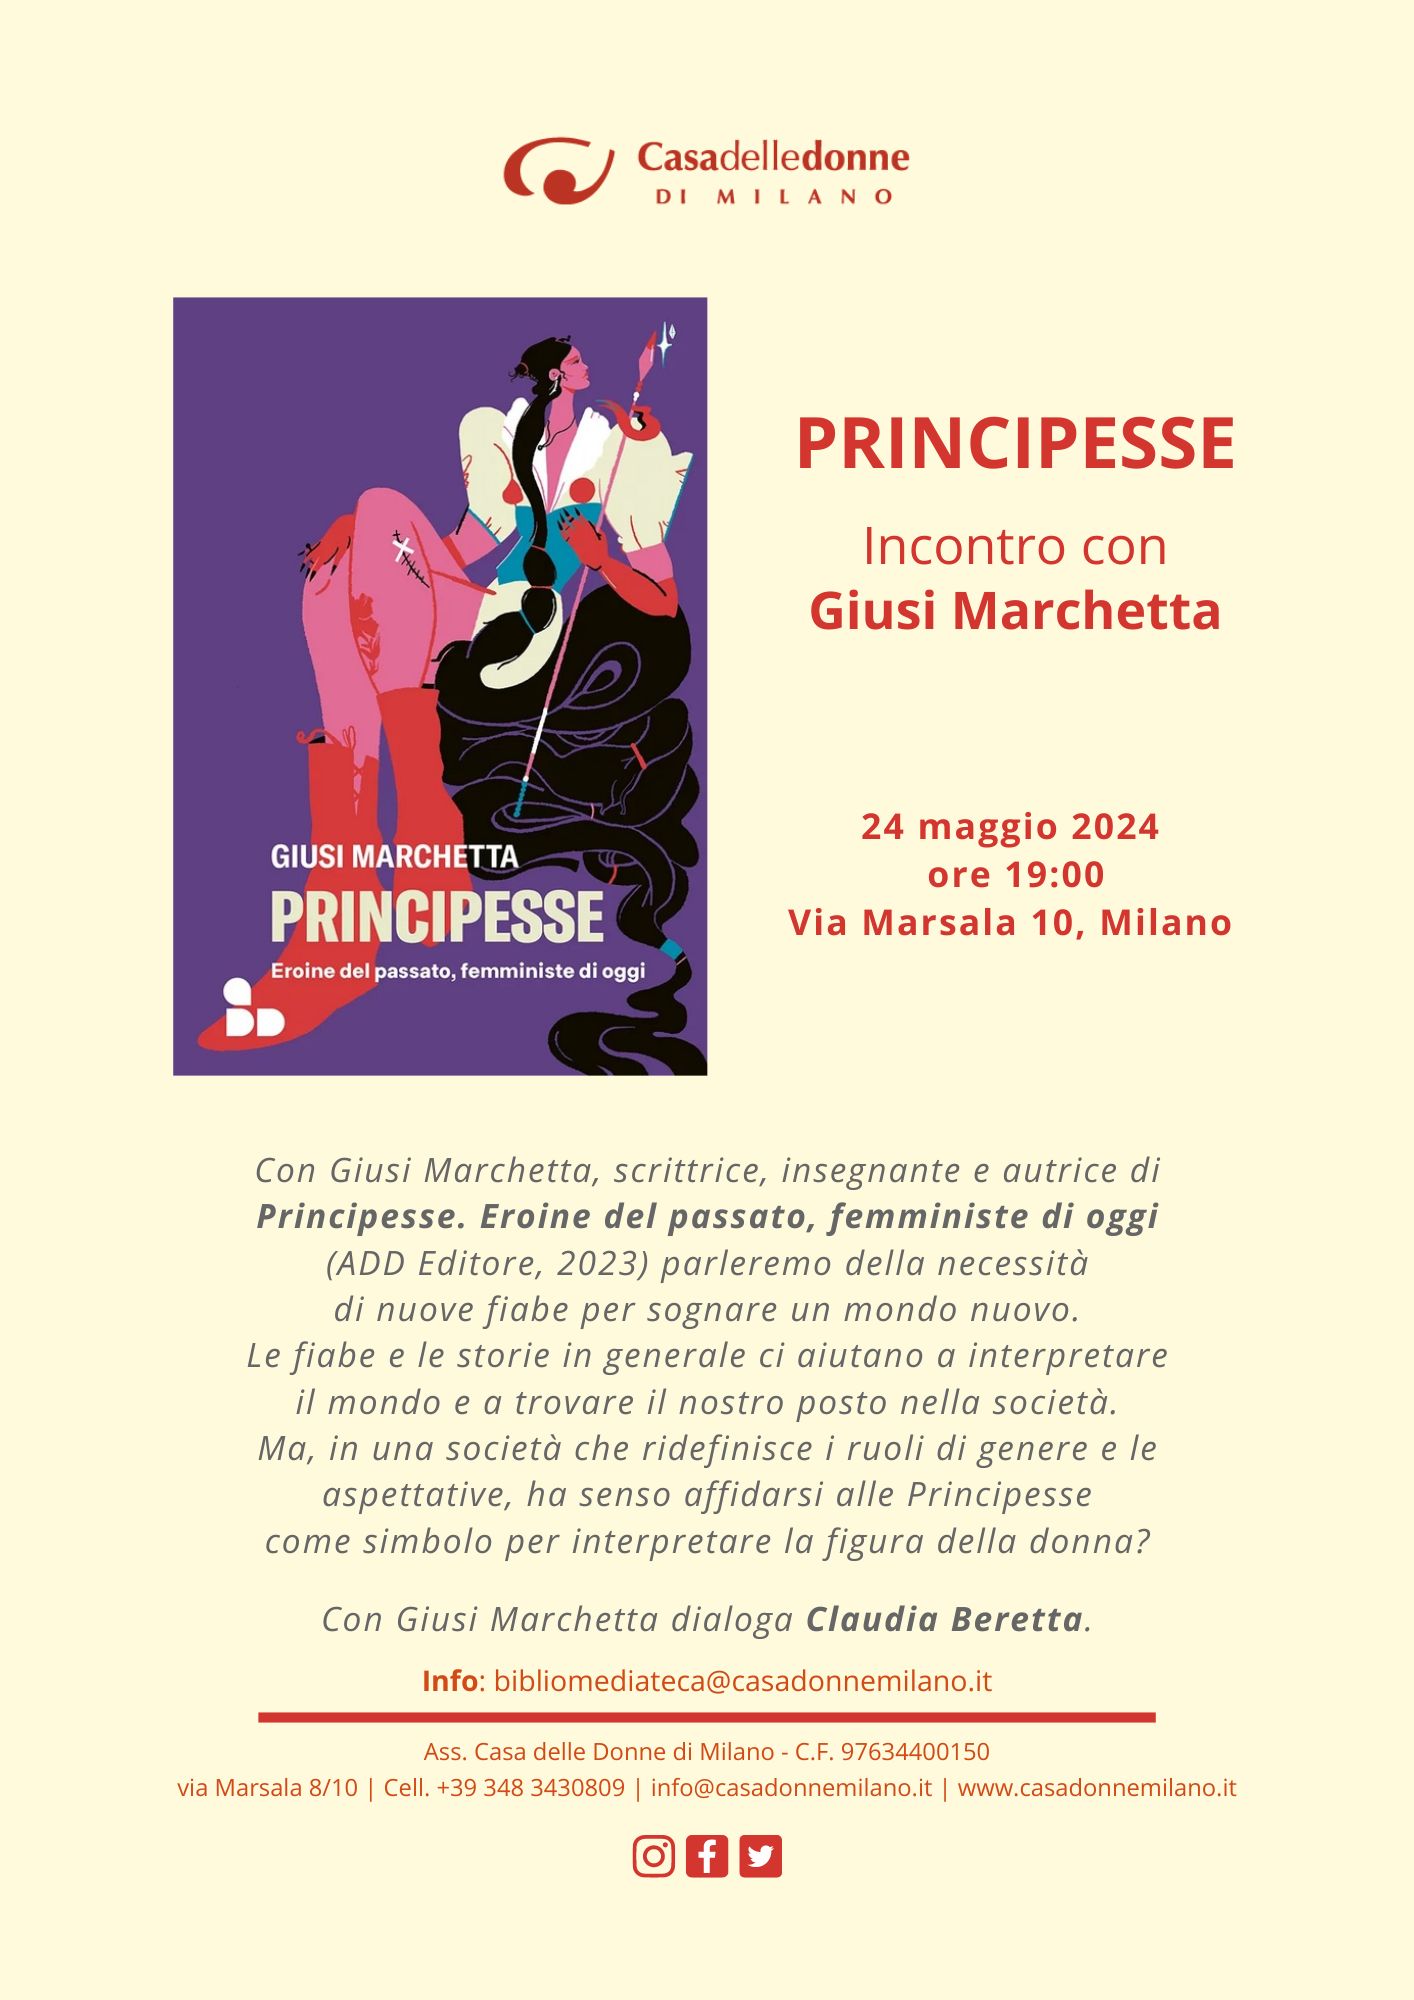 Incontro con Giusi Marchetta e presentazione di "Principesse" (ADD ed.) @ Casa delle Donne di Milano